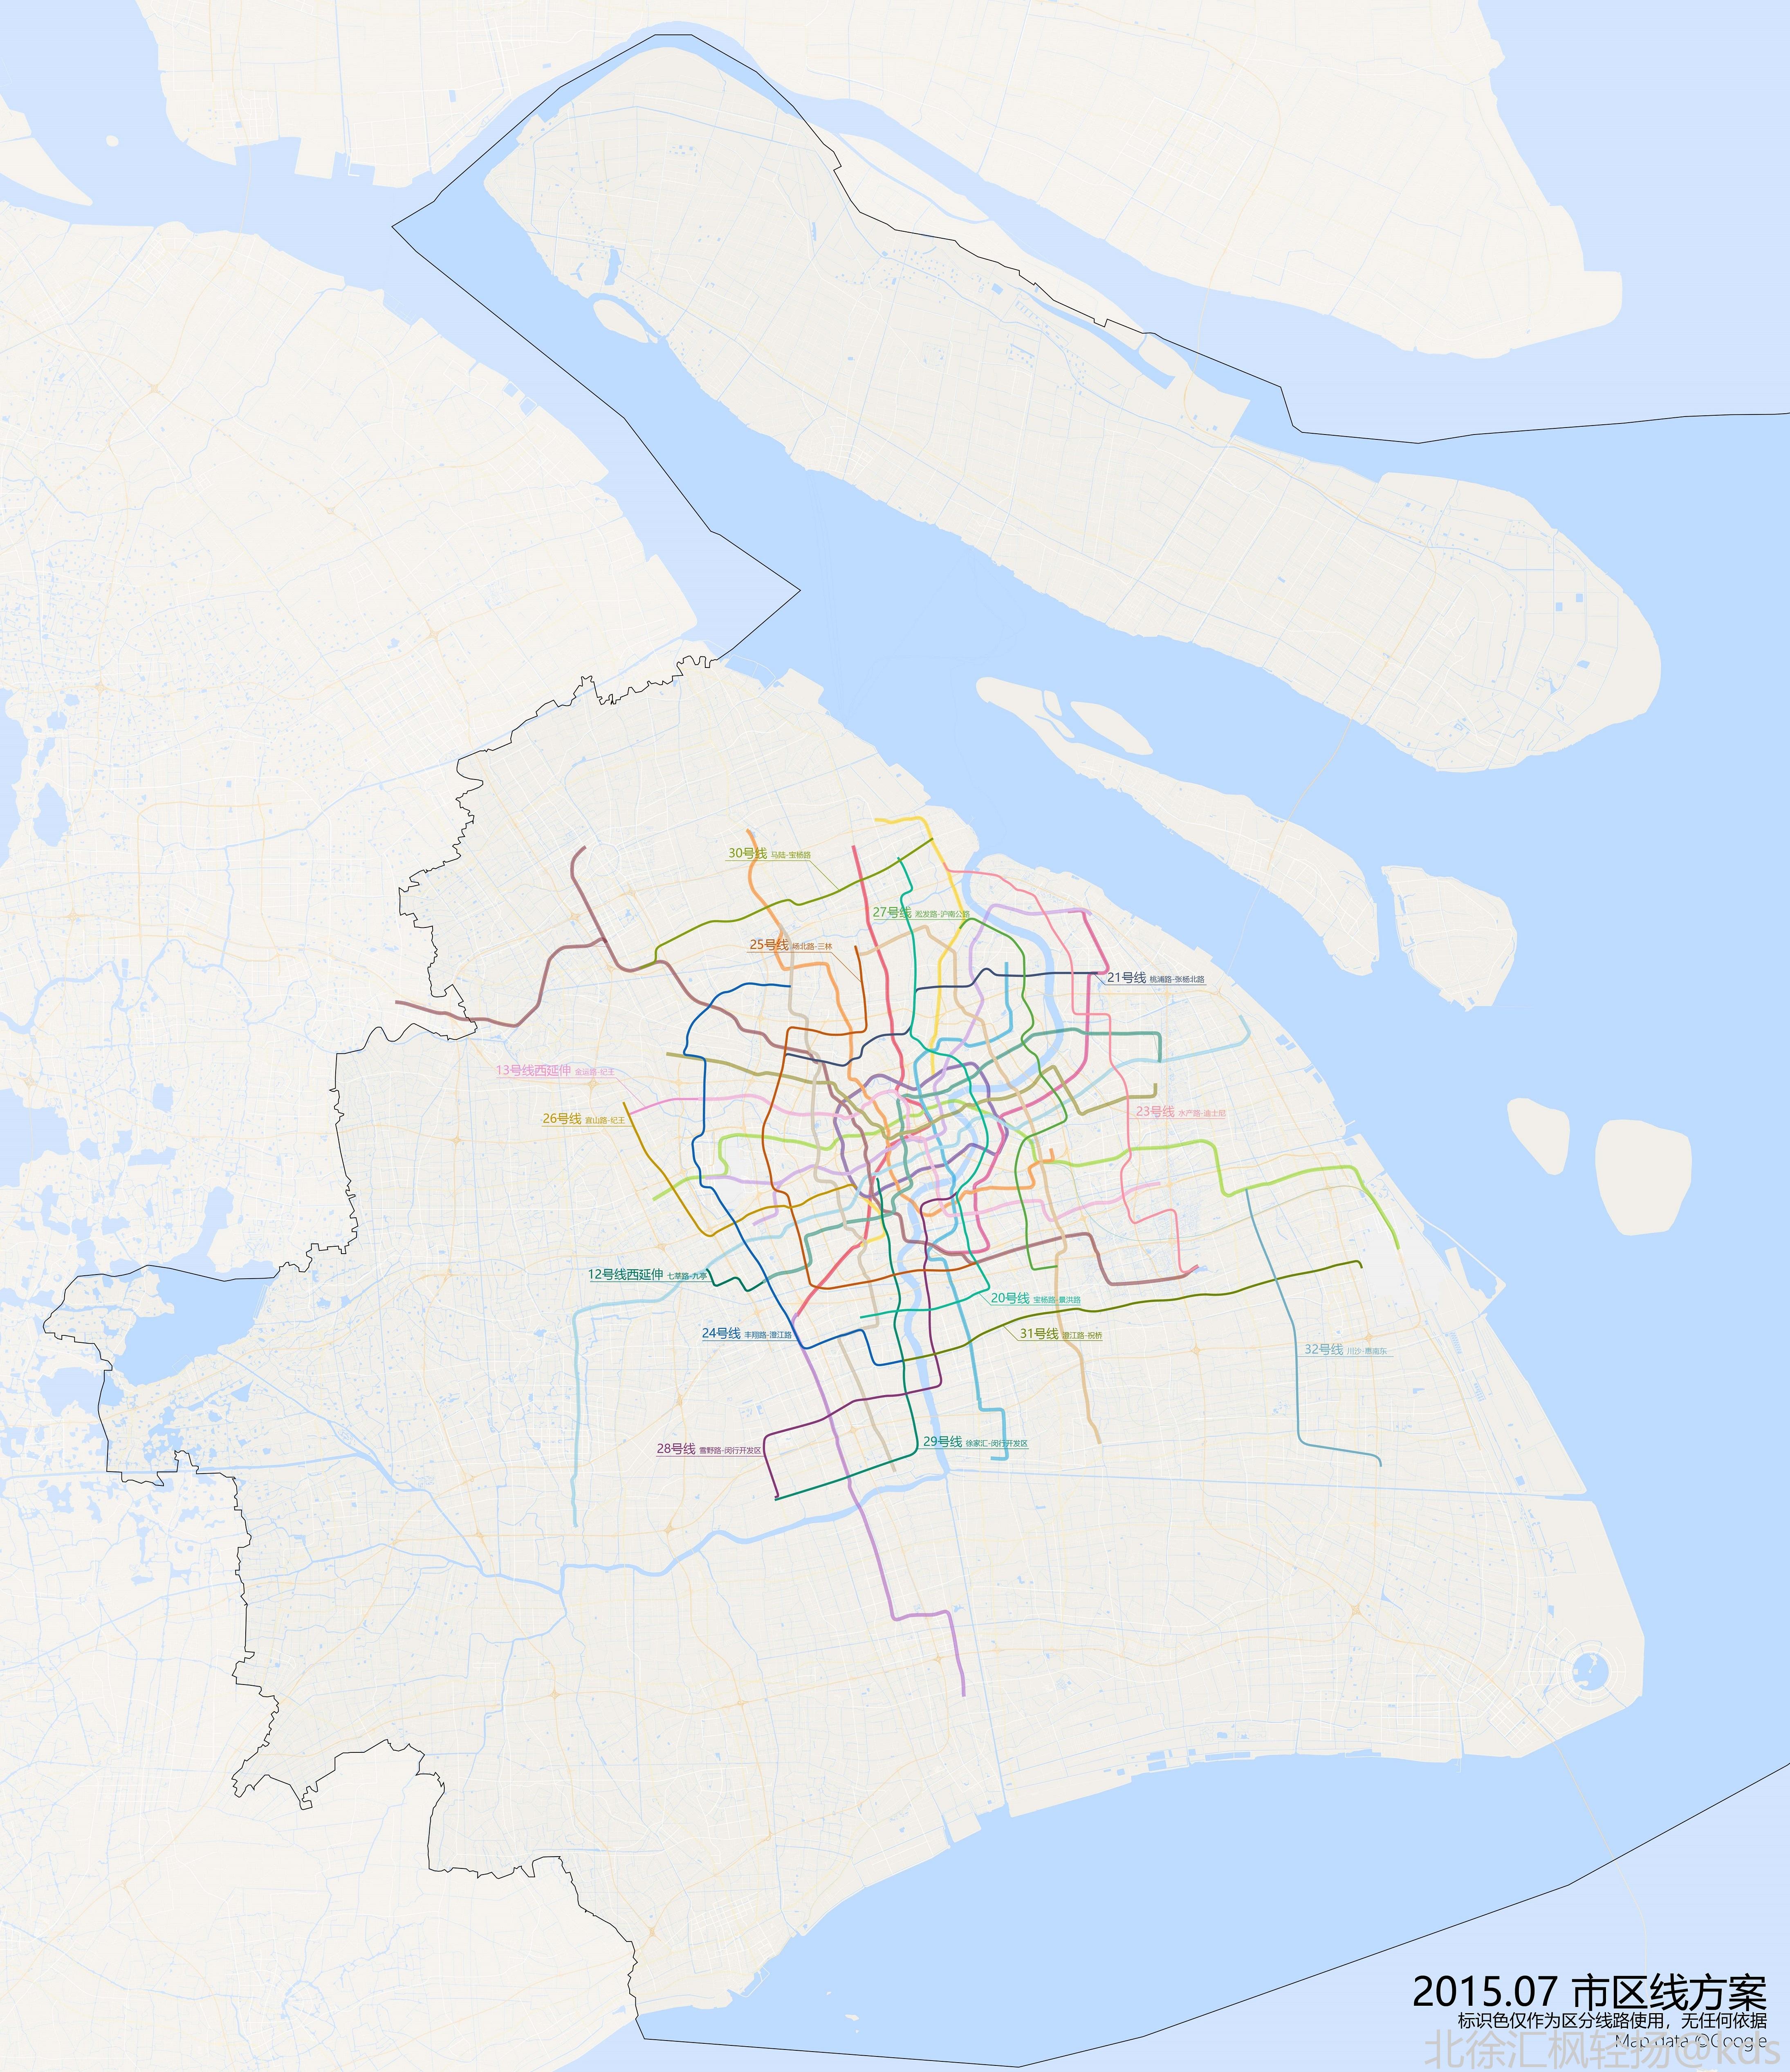 上海地铁线路图2050图片